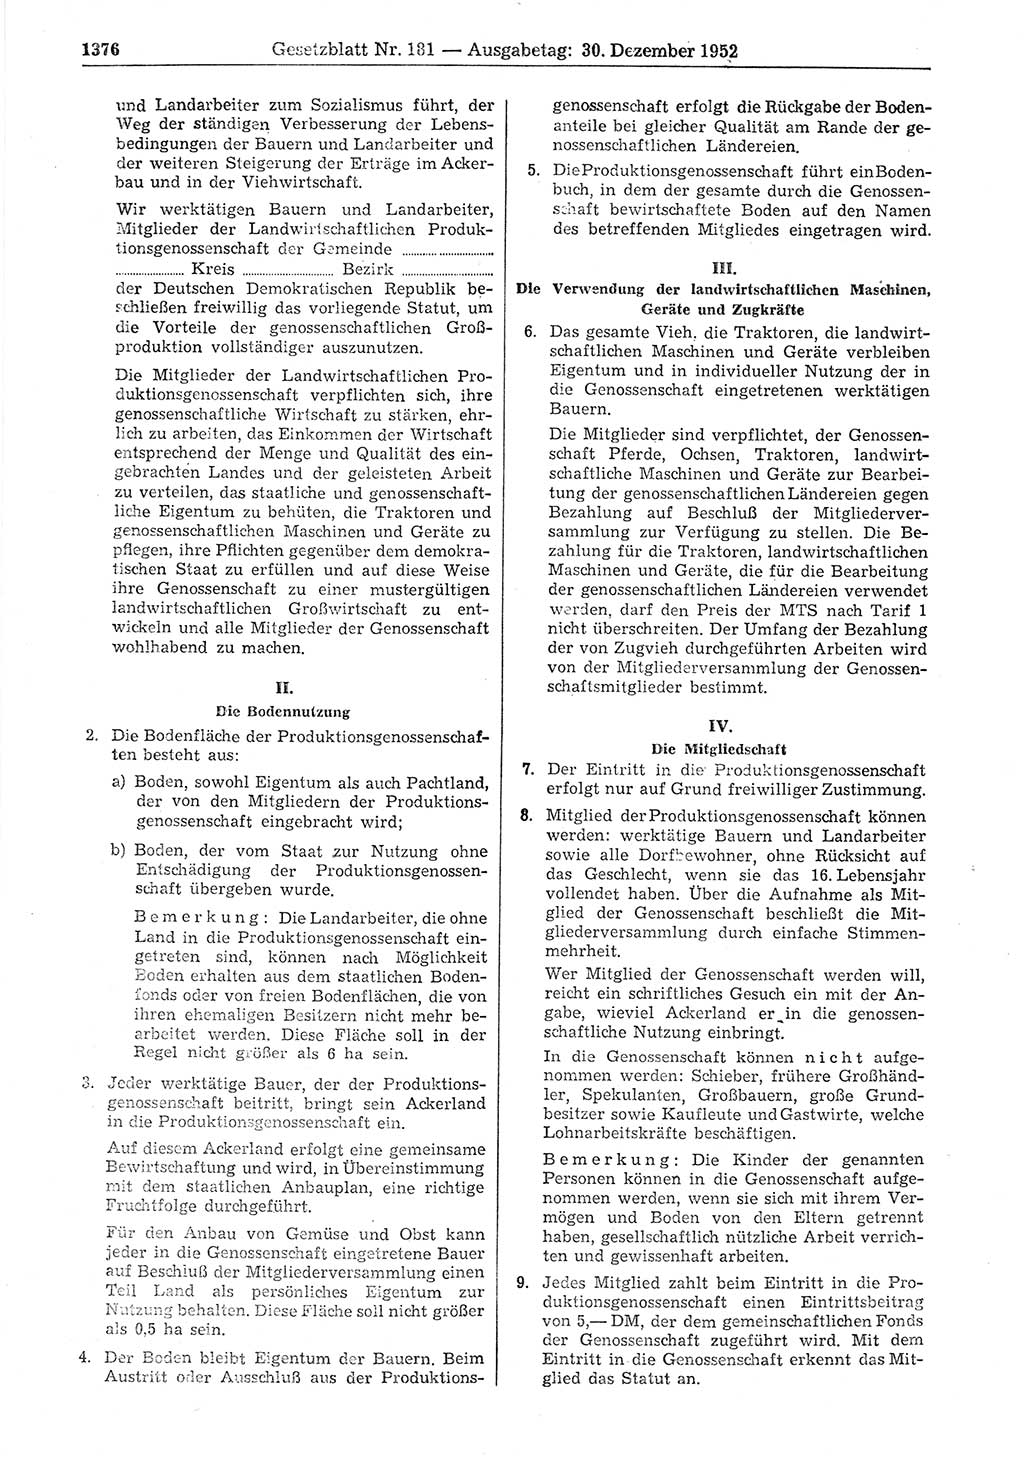 Gesetzblatt (GBl.) der Deutschen Demokratischen Republik (DDR) 1952, Seite 1376 (GBl. DDR 1952, S. 1376)